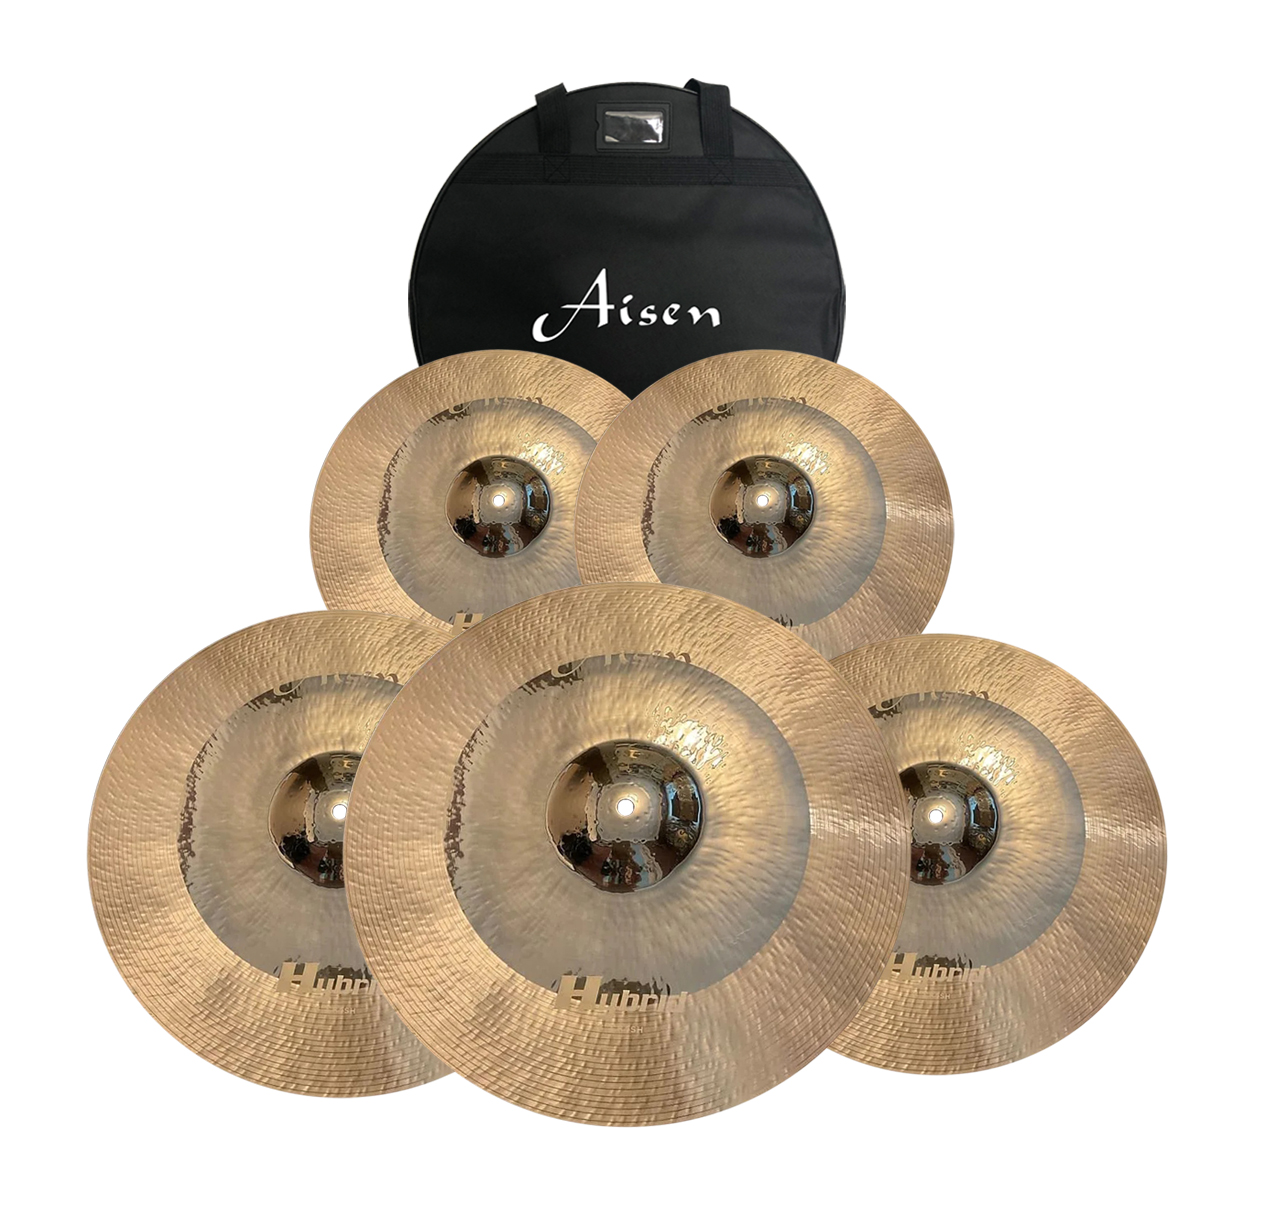 Тарелки, барабаны для ударных установок AISEN B20 HYBRID CYMBAL PACK тарелки барабаны для ударных установок zildjian sd4680 s dark cymbal pack 14h 16c 18c 20r